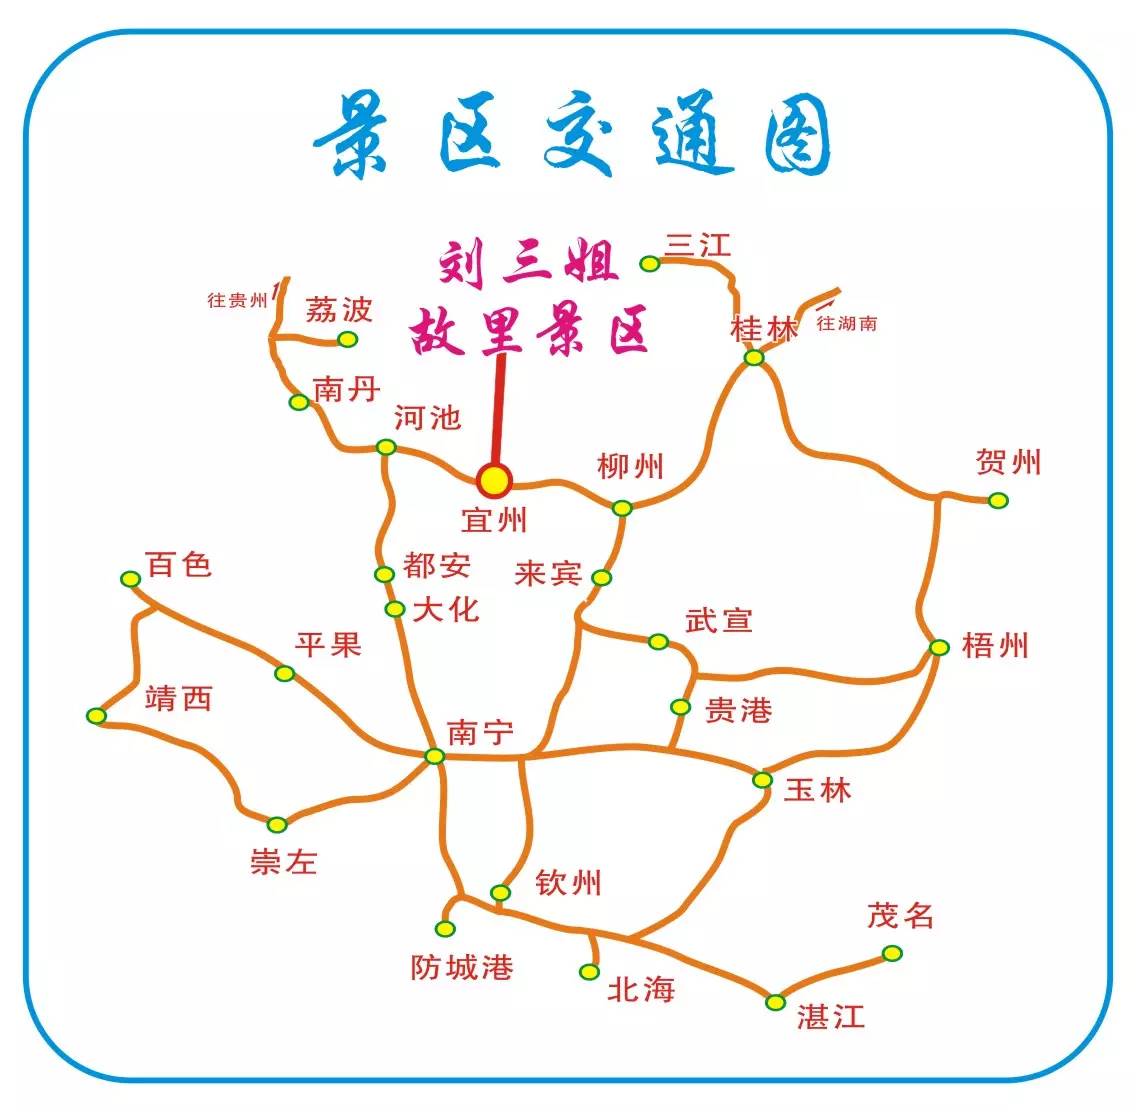 宜州行政区划地图图片